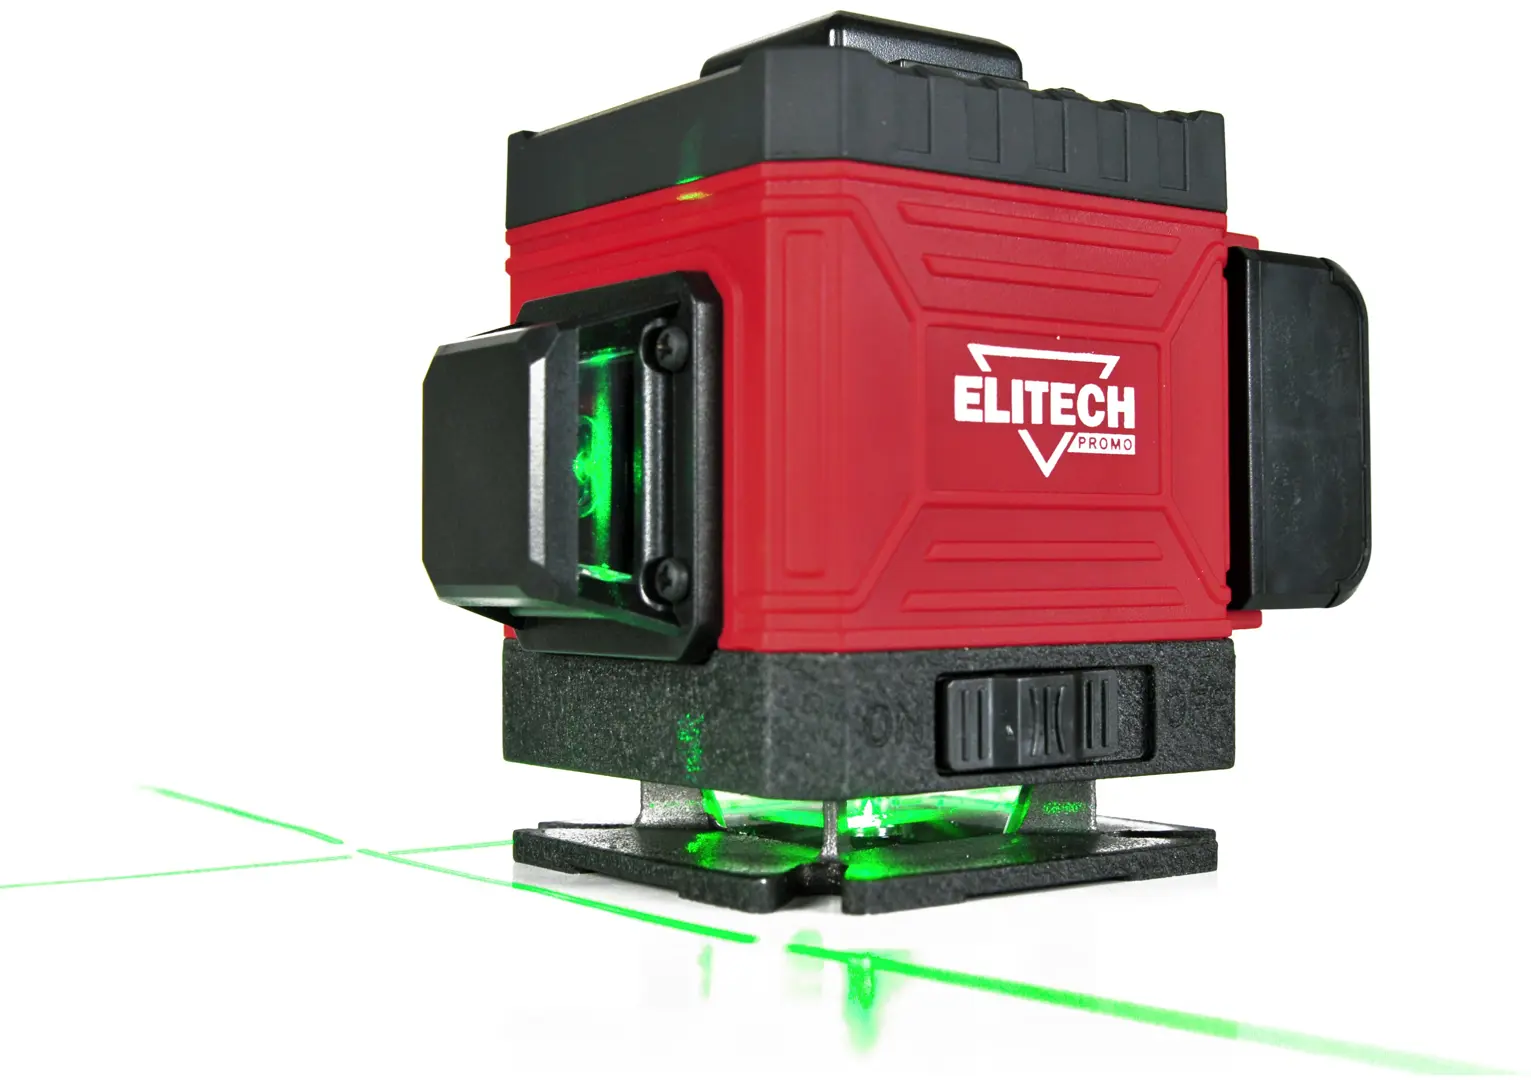 Уровень лазерный Elitech ЛН 3/360-ЗЕЛ зеленый луч, 25 м